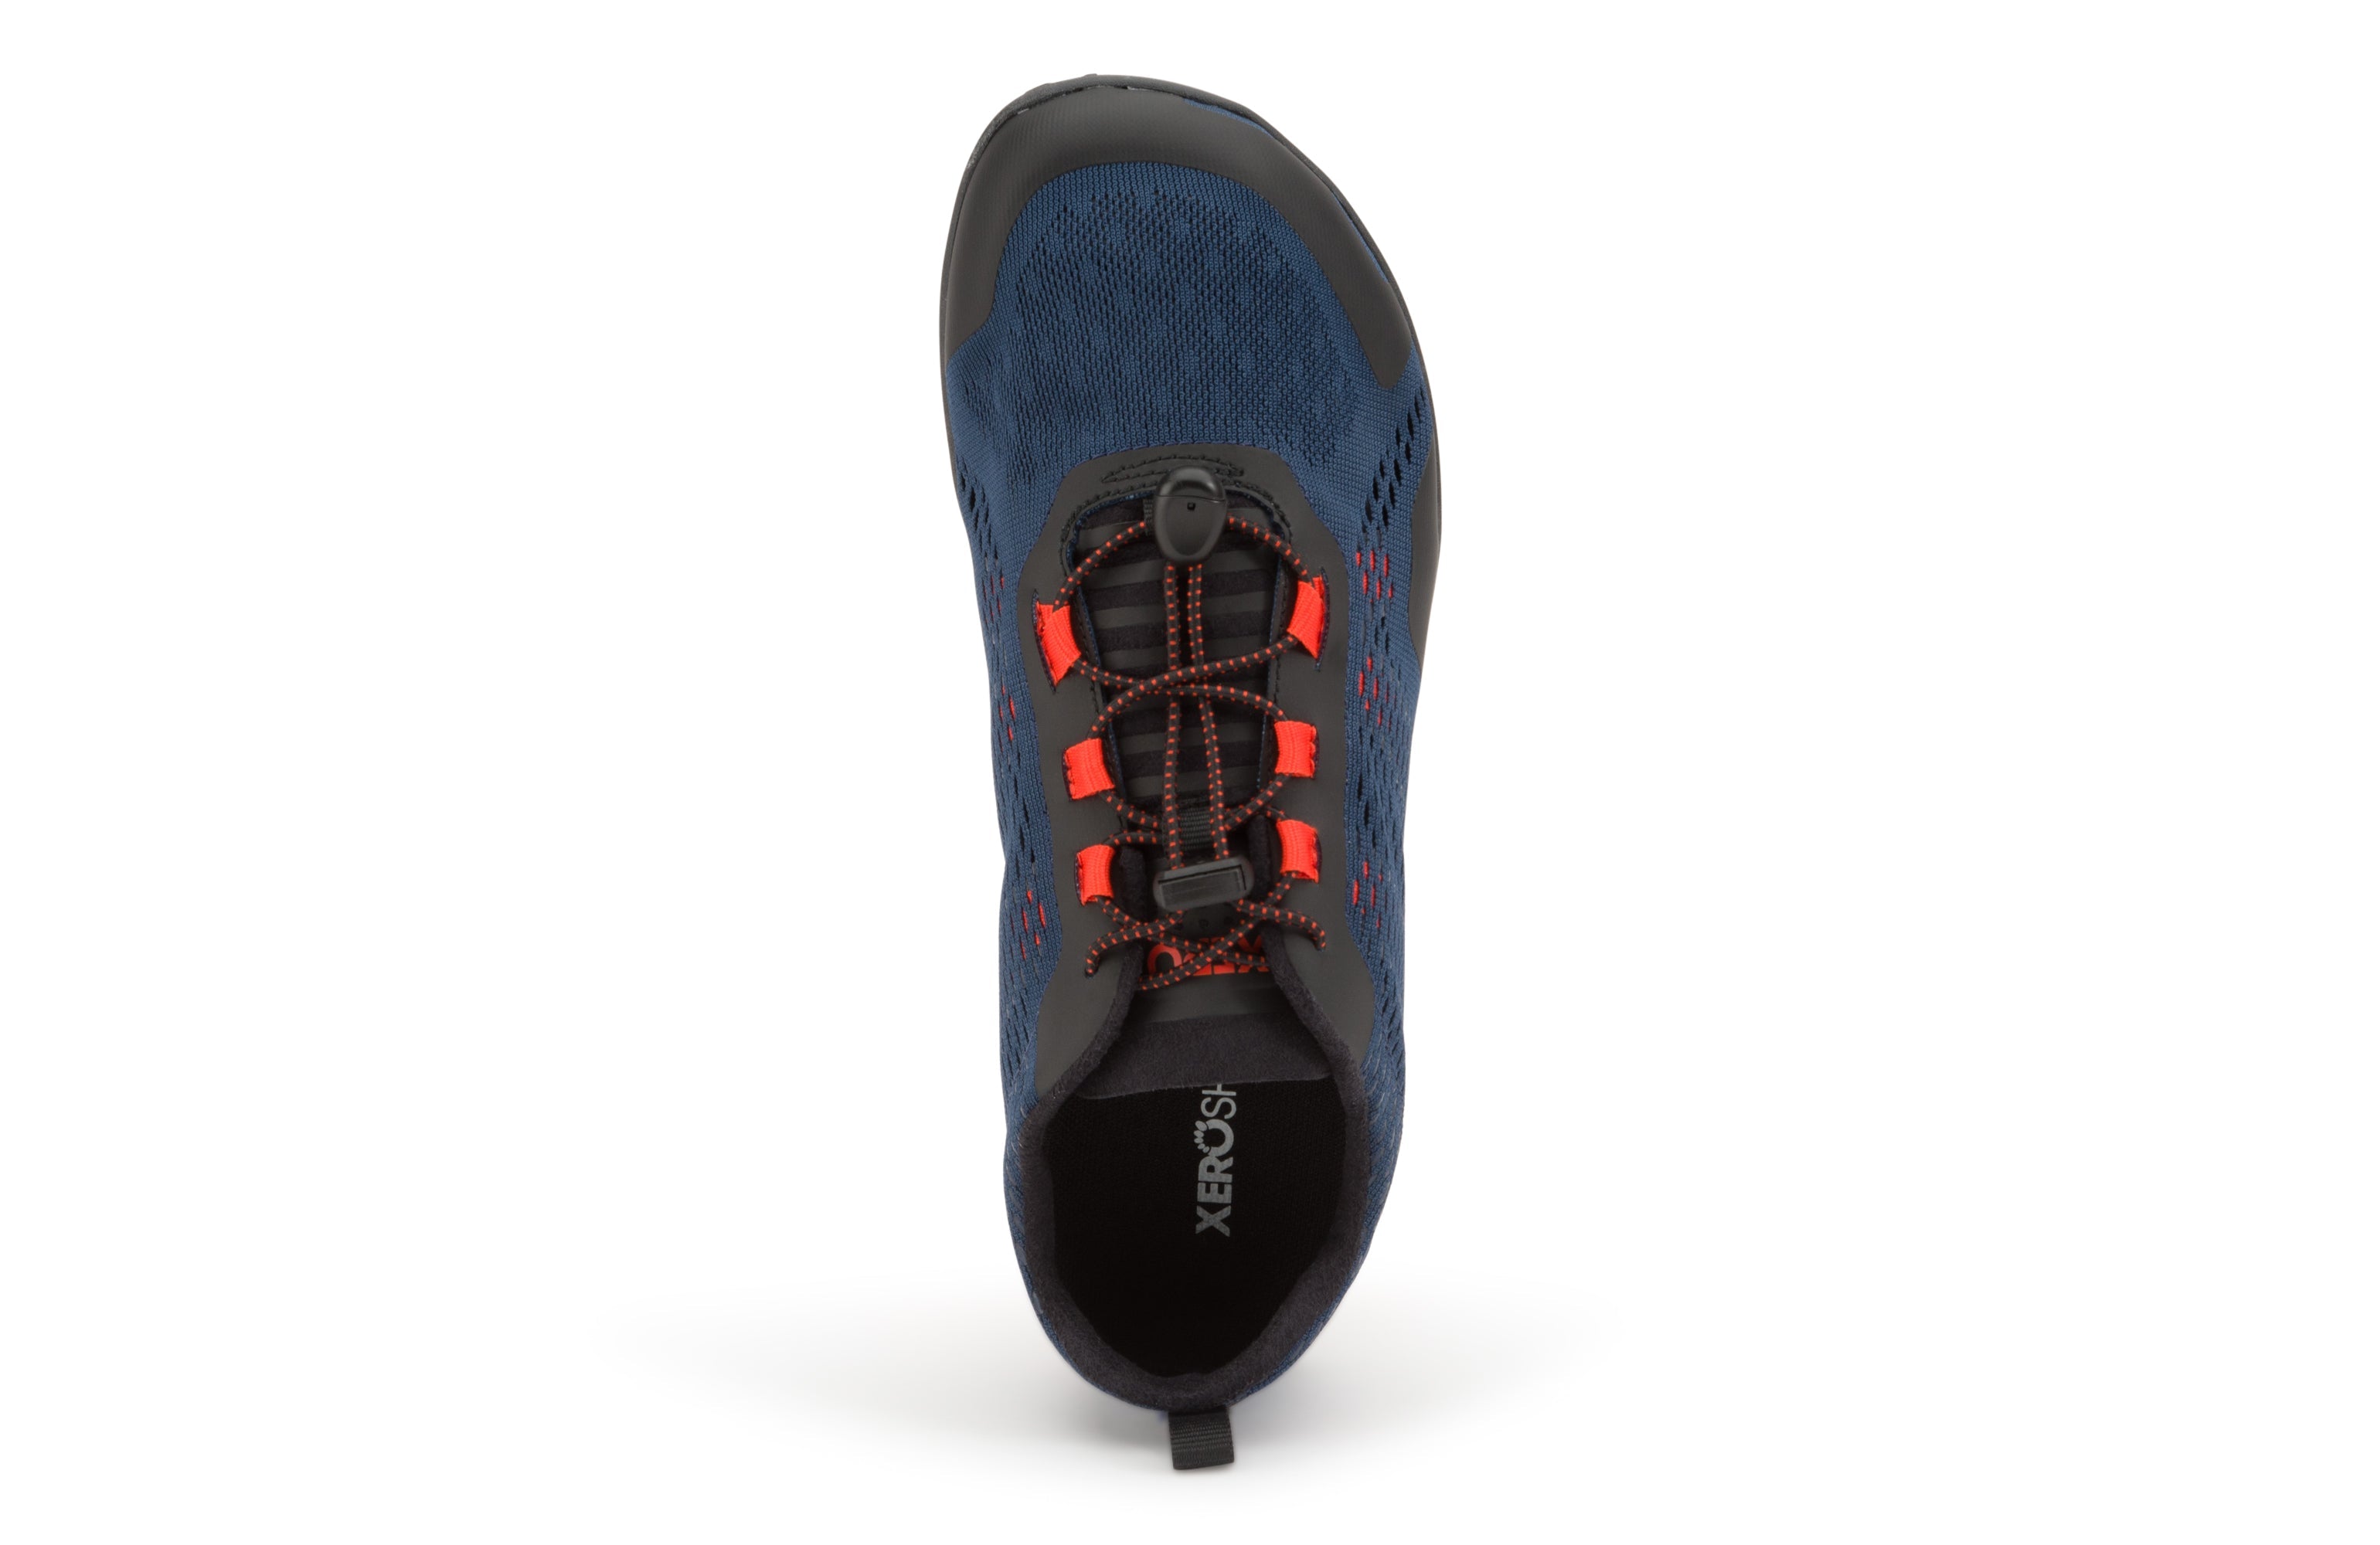 Xero Shoes Aqua X Sport barfods vand træningssko til mænd i farven moonlit blue, top